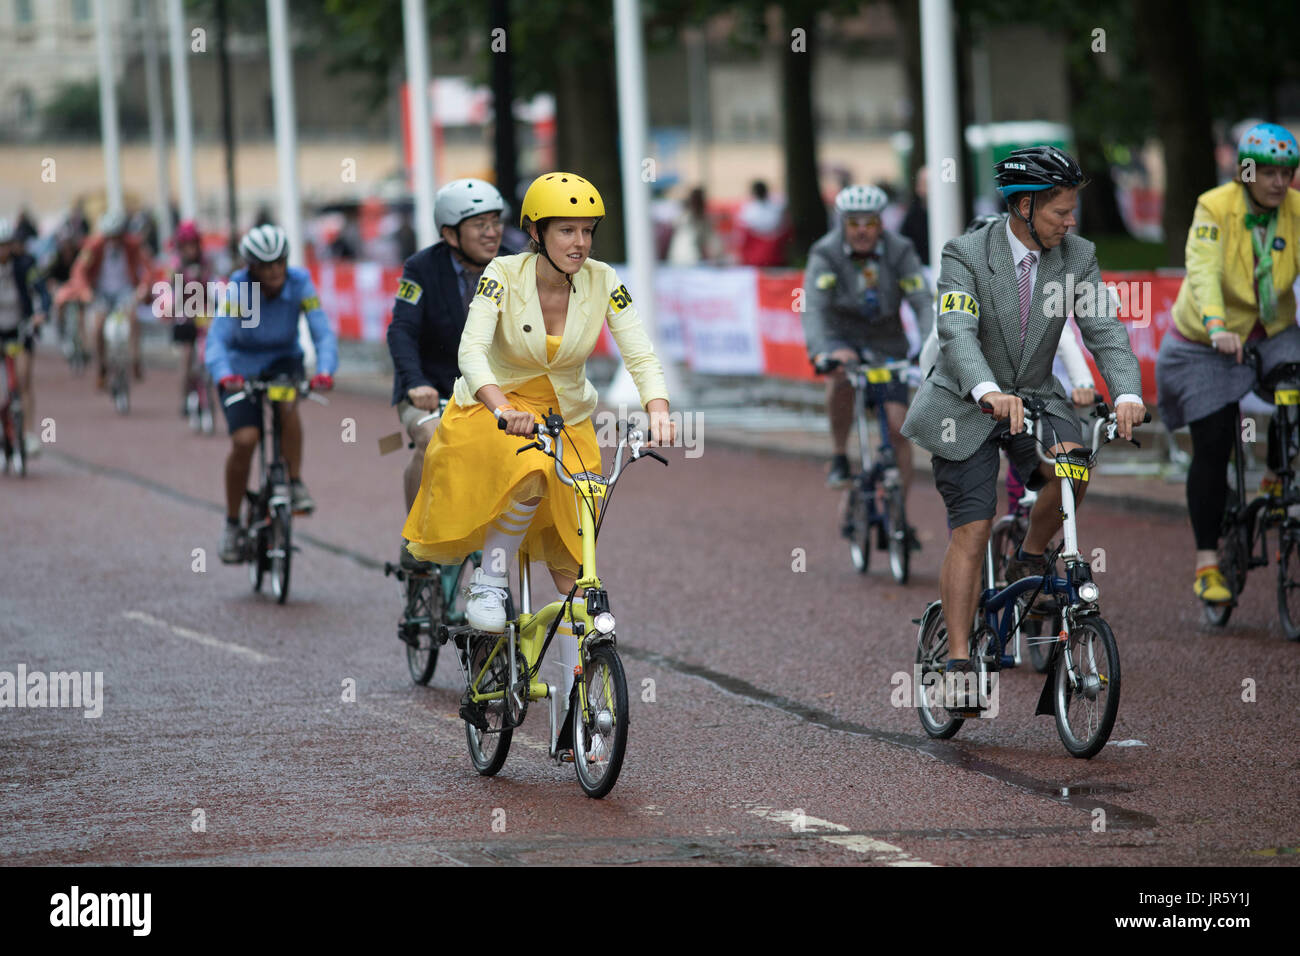 3 juin 2017 Le centre commercial London UK le début de la course du championnat du monde de Brompton race autour du parc une femme en robe jaune Banque D'Images